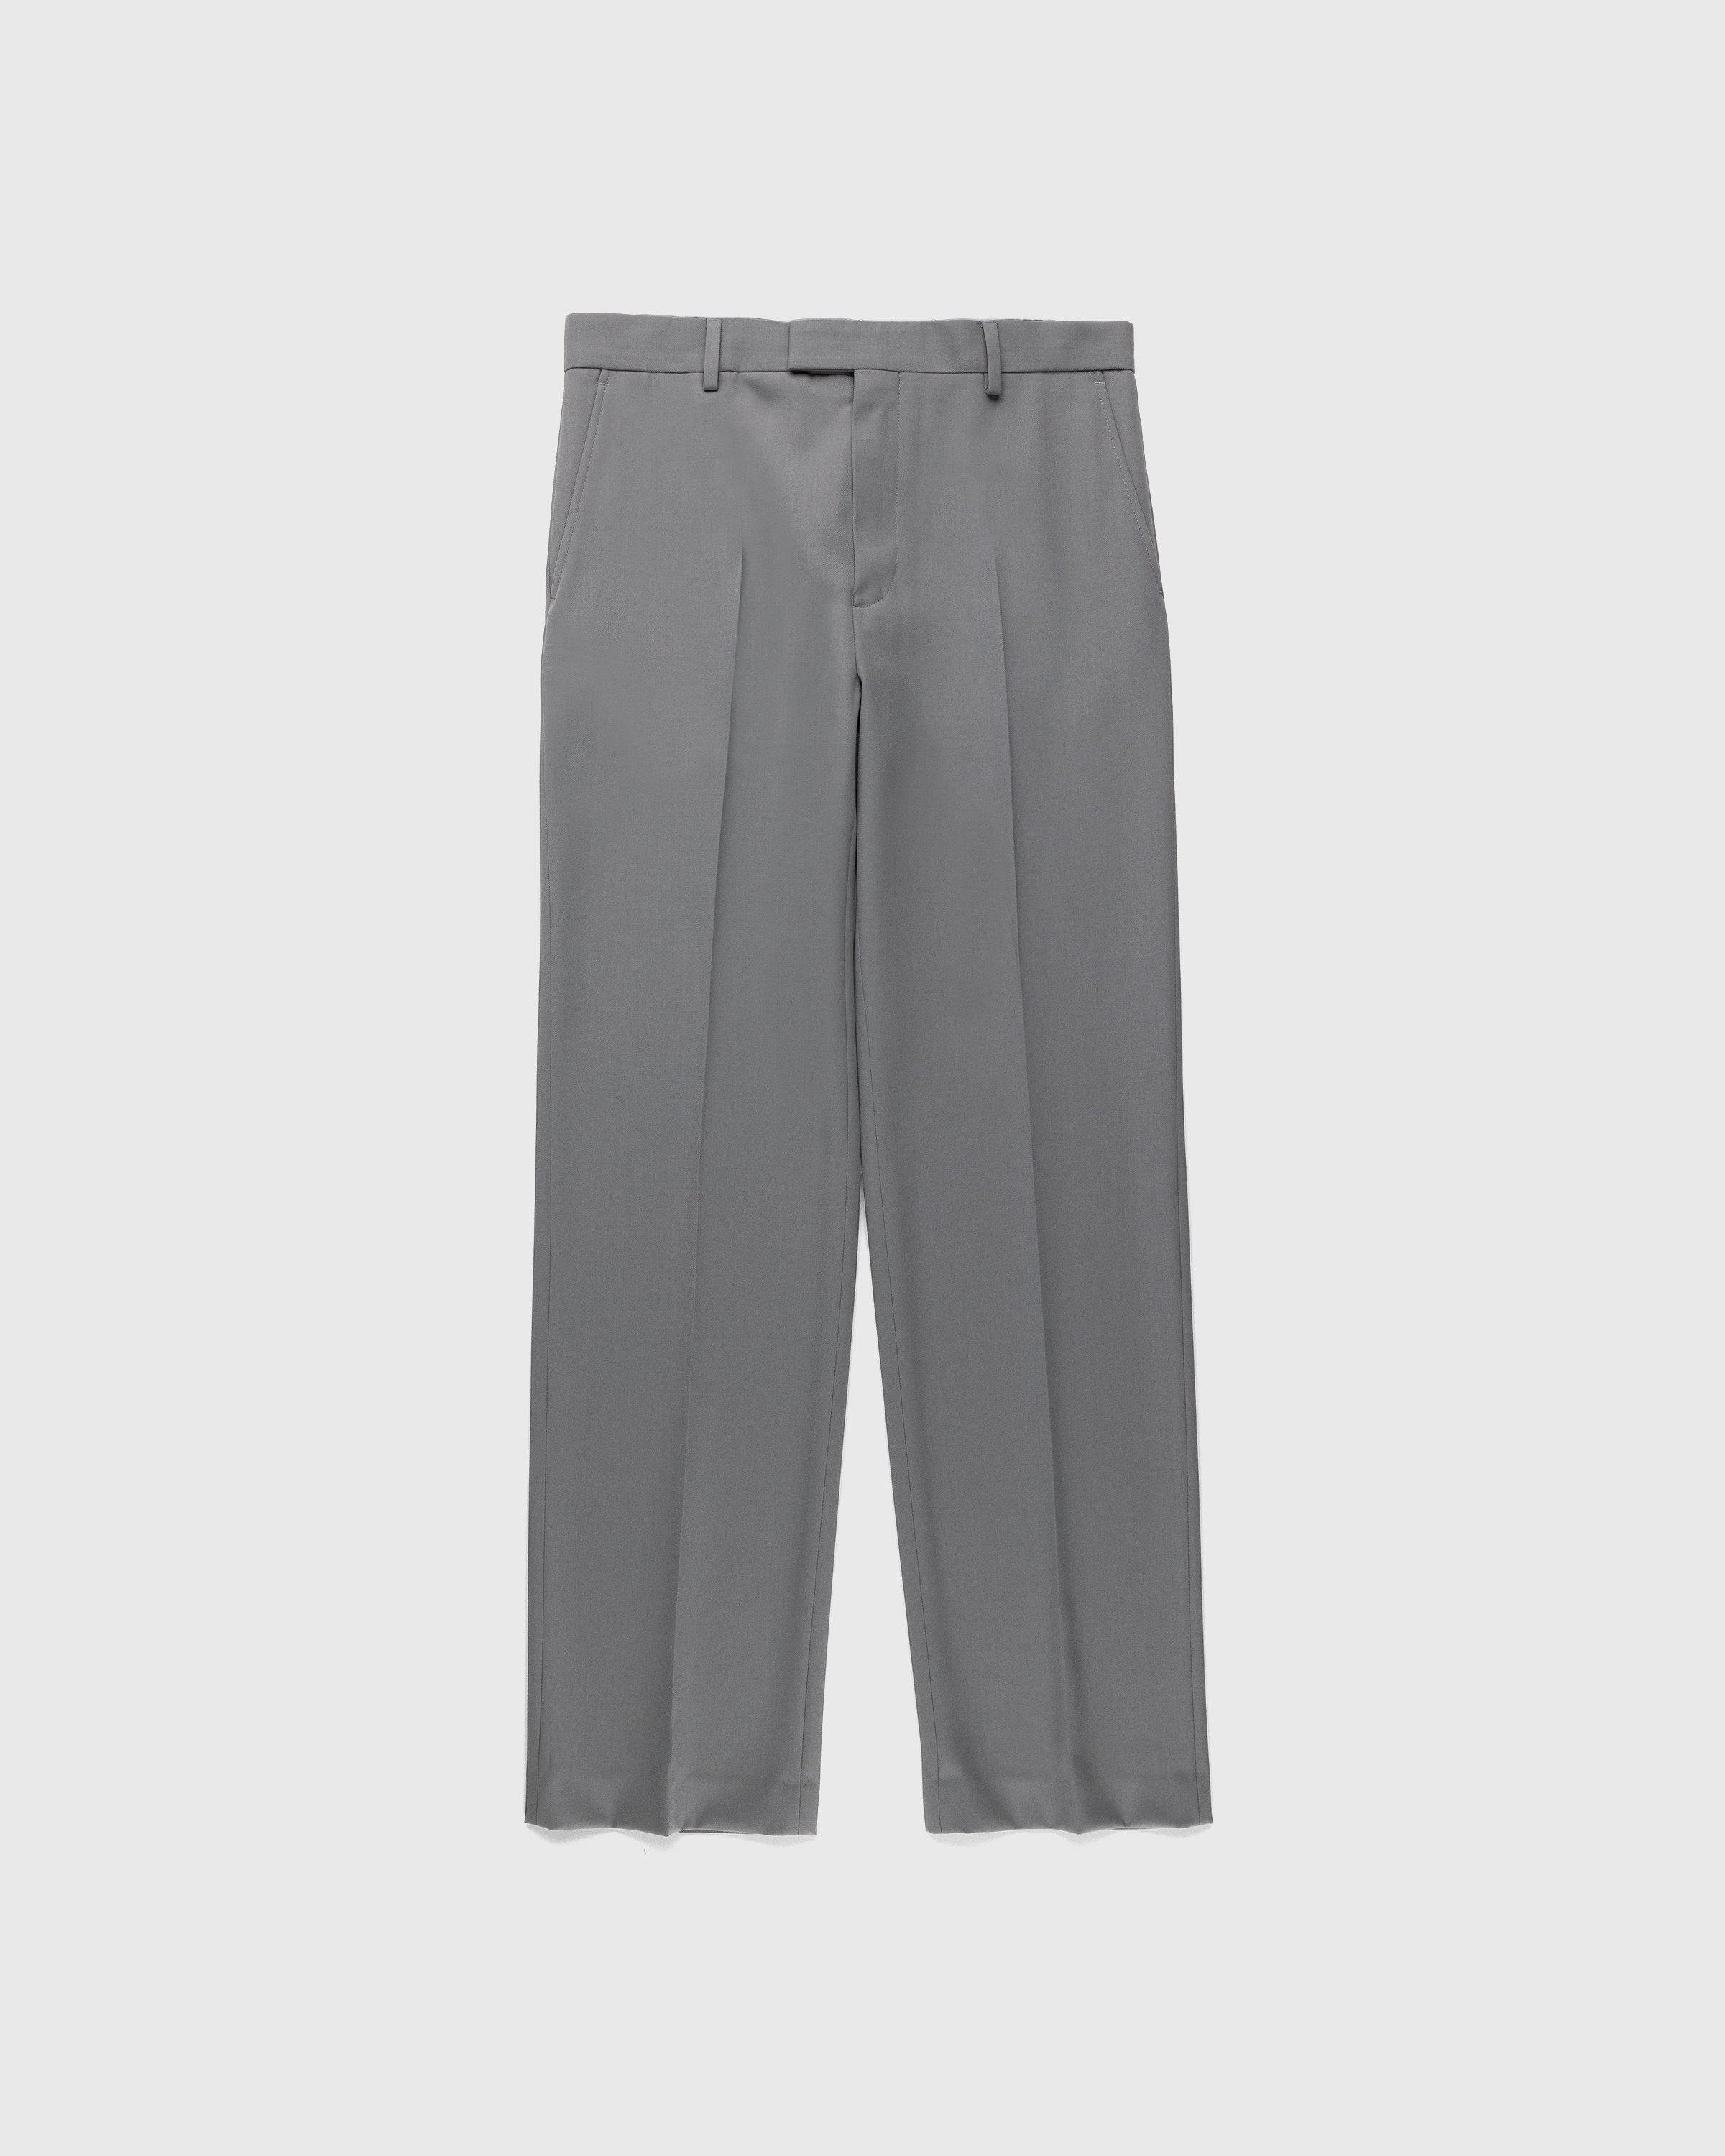 Pinnet Long Pants Grey by DRIES VAN NOTEN